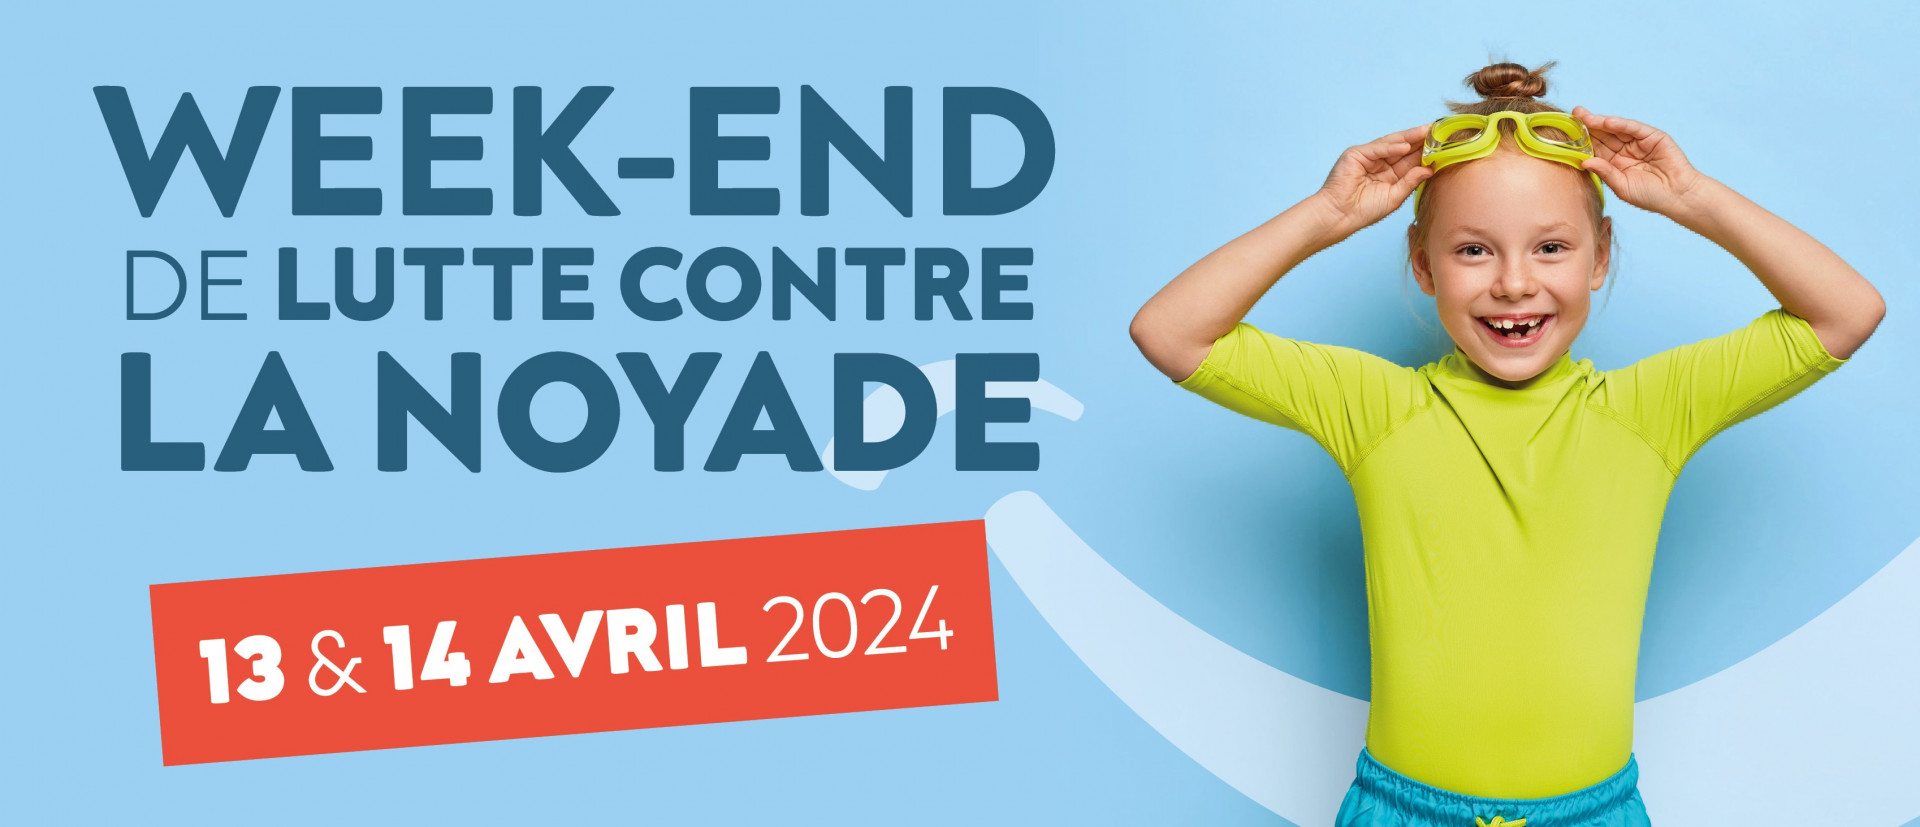 Cette année encore, les centres aquatiques Smiling People se mobilisent à l'occasion d'un week-end de lutte contre la noyade qui aura lieu partout en France les 13 et 14 avril 2024 !